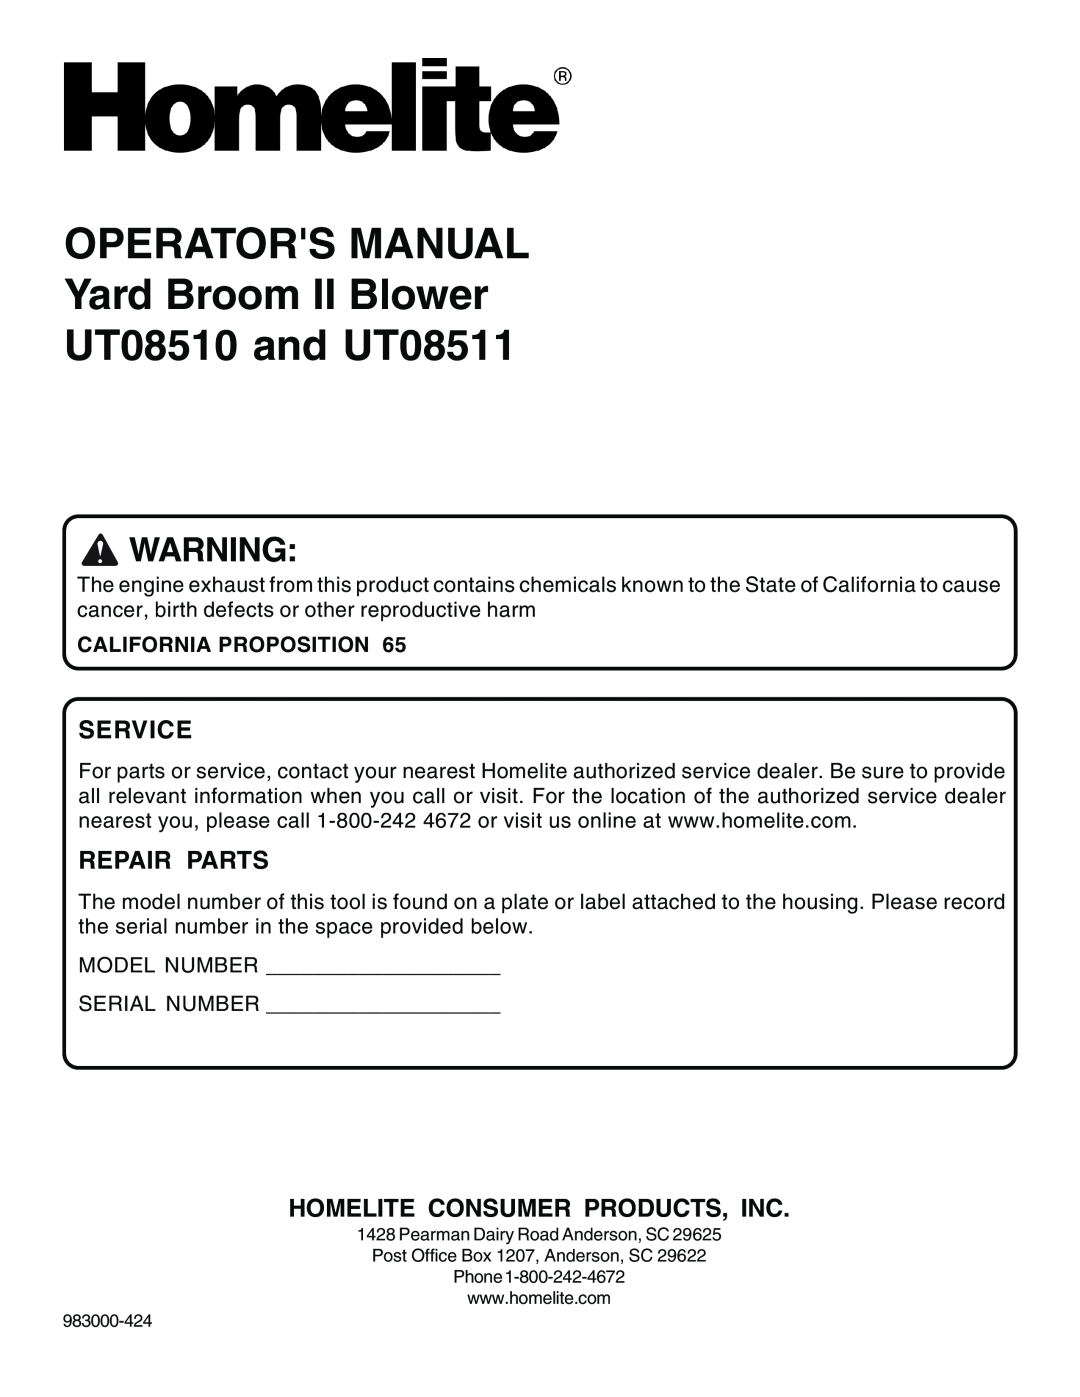 Homelite UT08510, UT08511 manual Service, Repair Parts, Homelite Consumer Products, Inc, California Proposition 